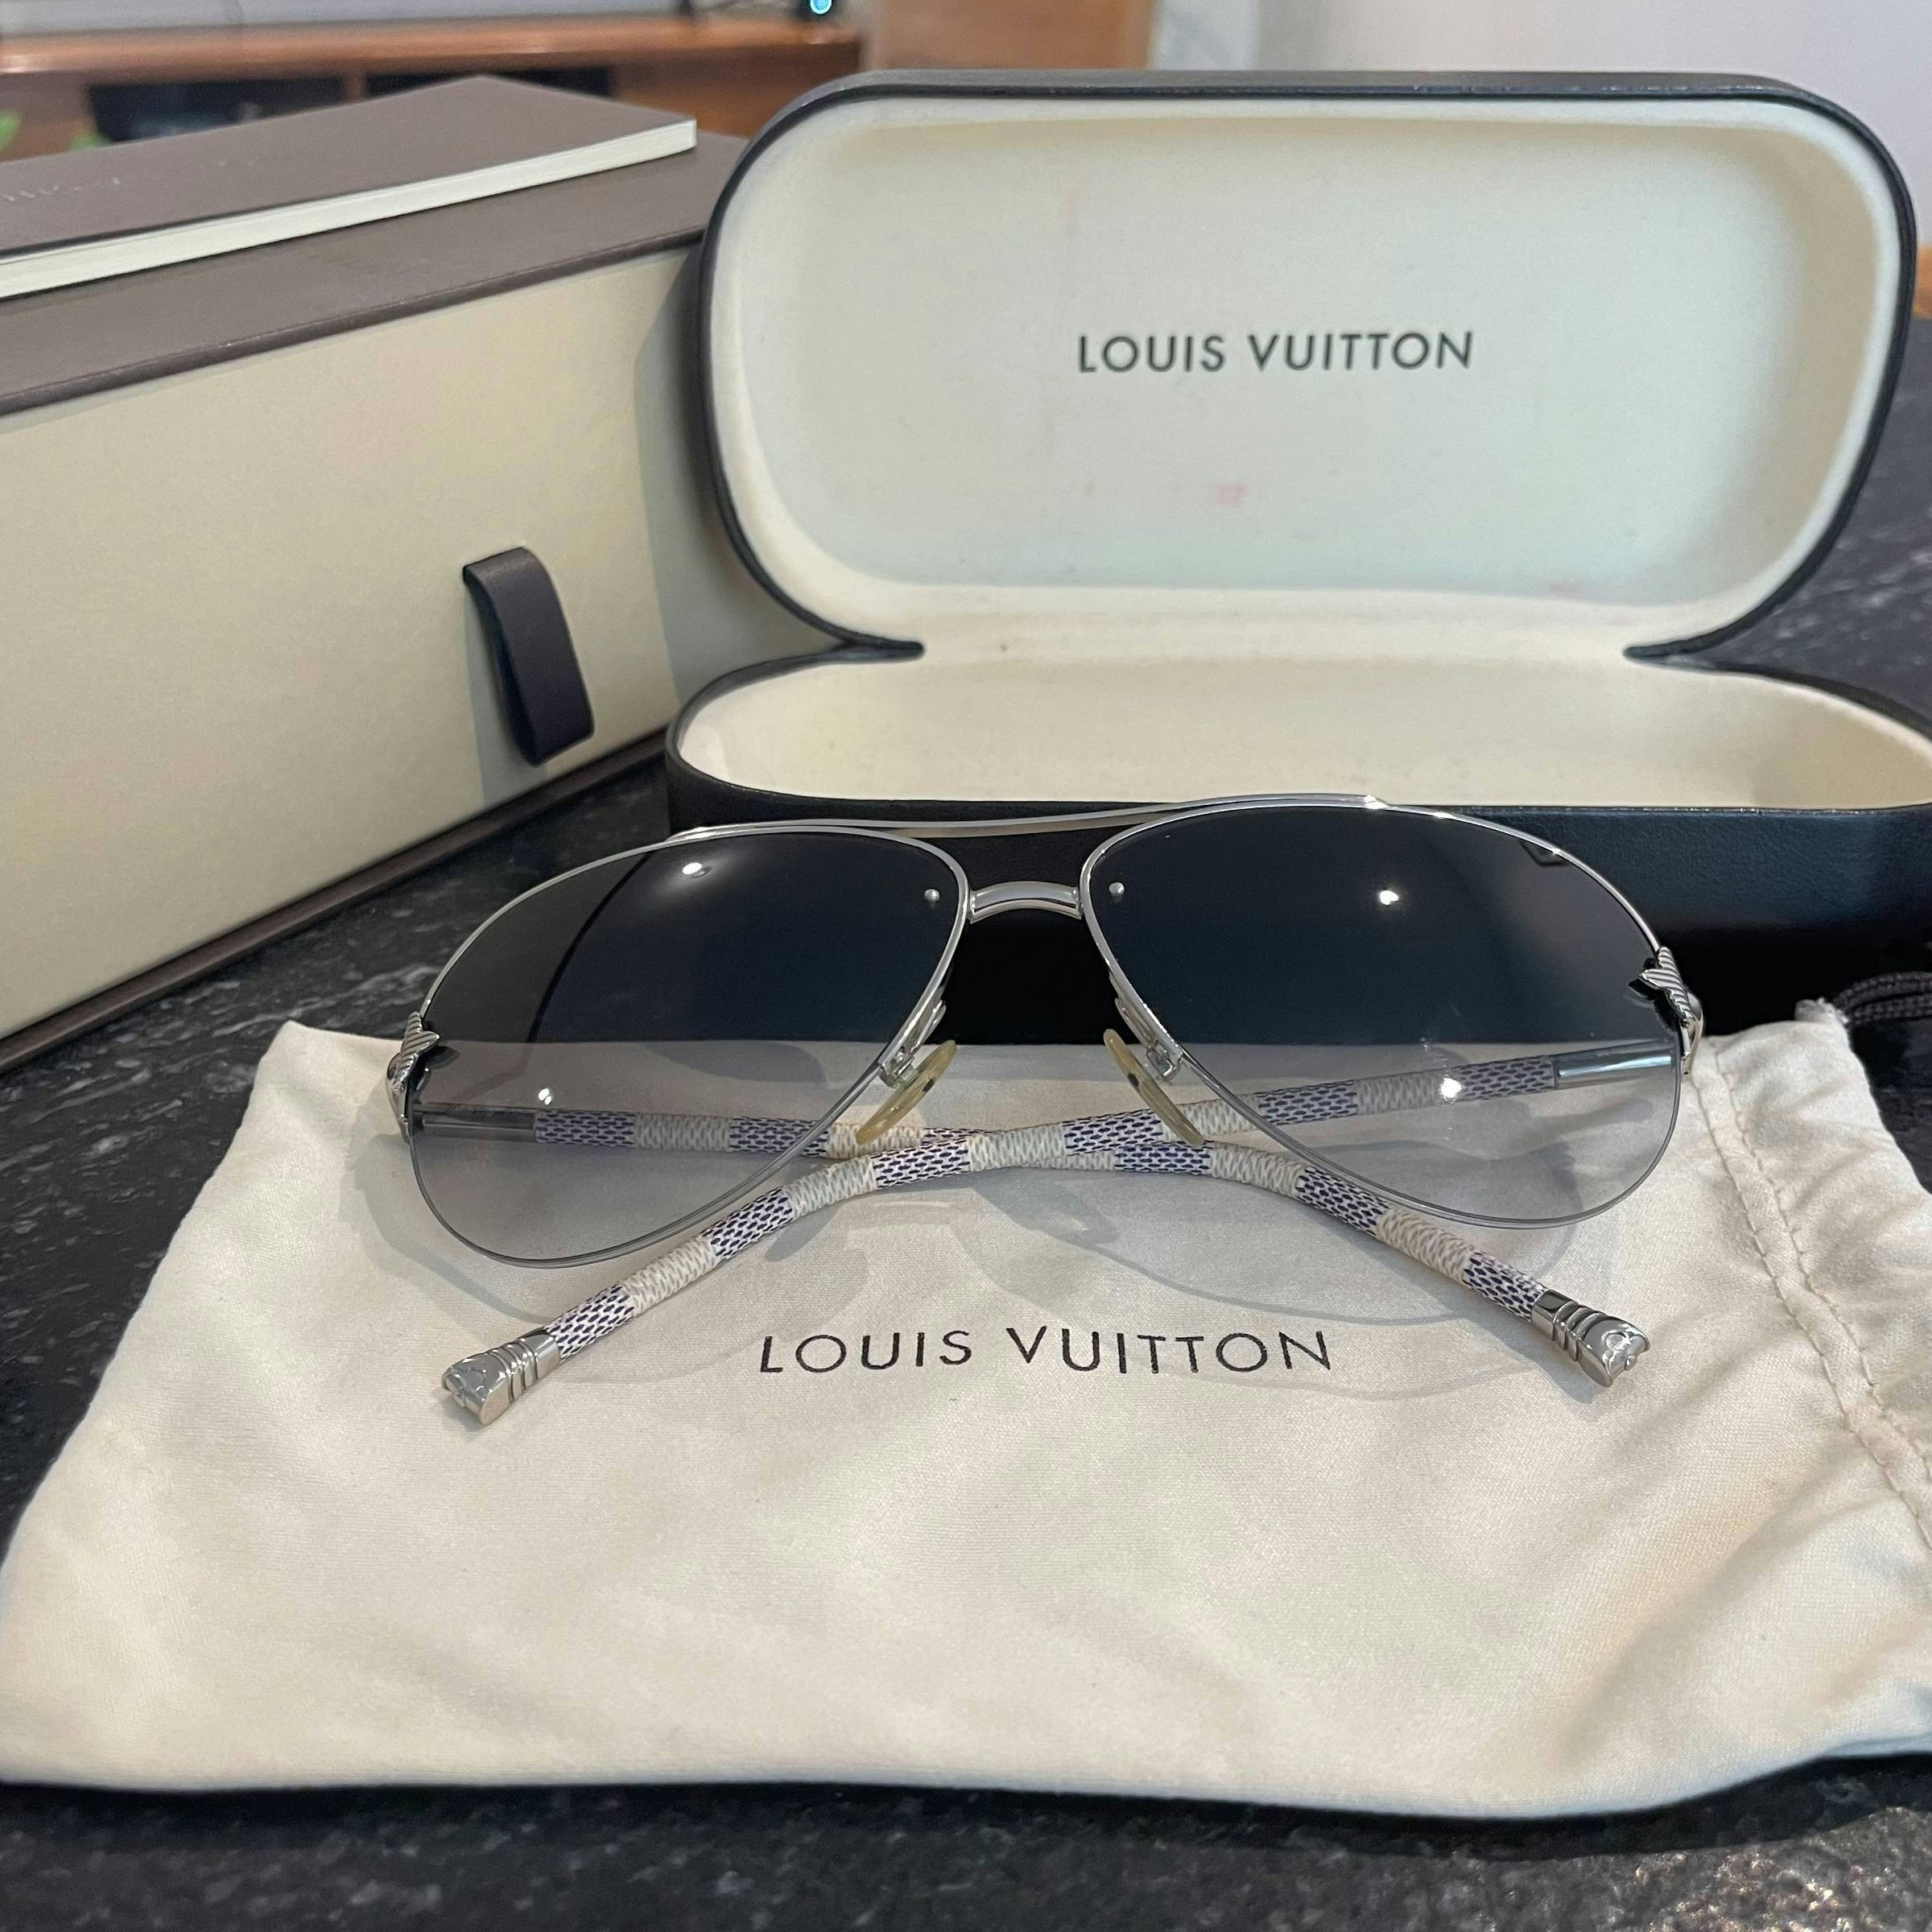 Lentes de sol Louis Vuitton - $1,400.00